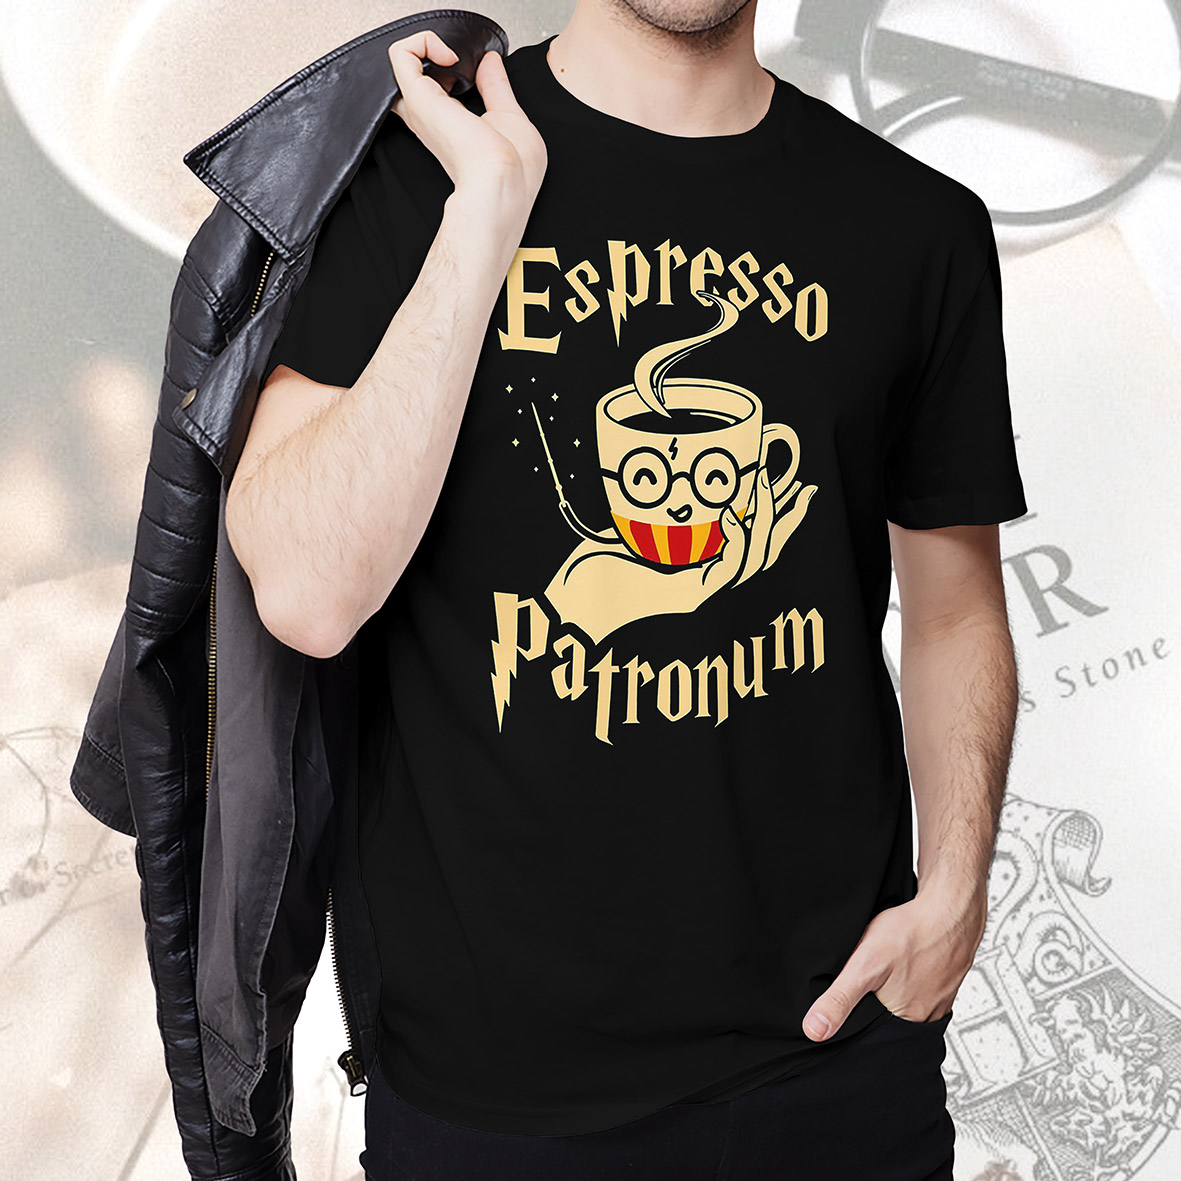 Camiseta Unissex Espresso Patronum Harry Potter Hogwarts (Preto)